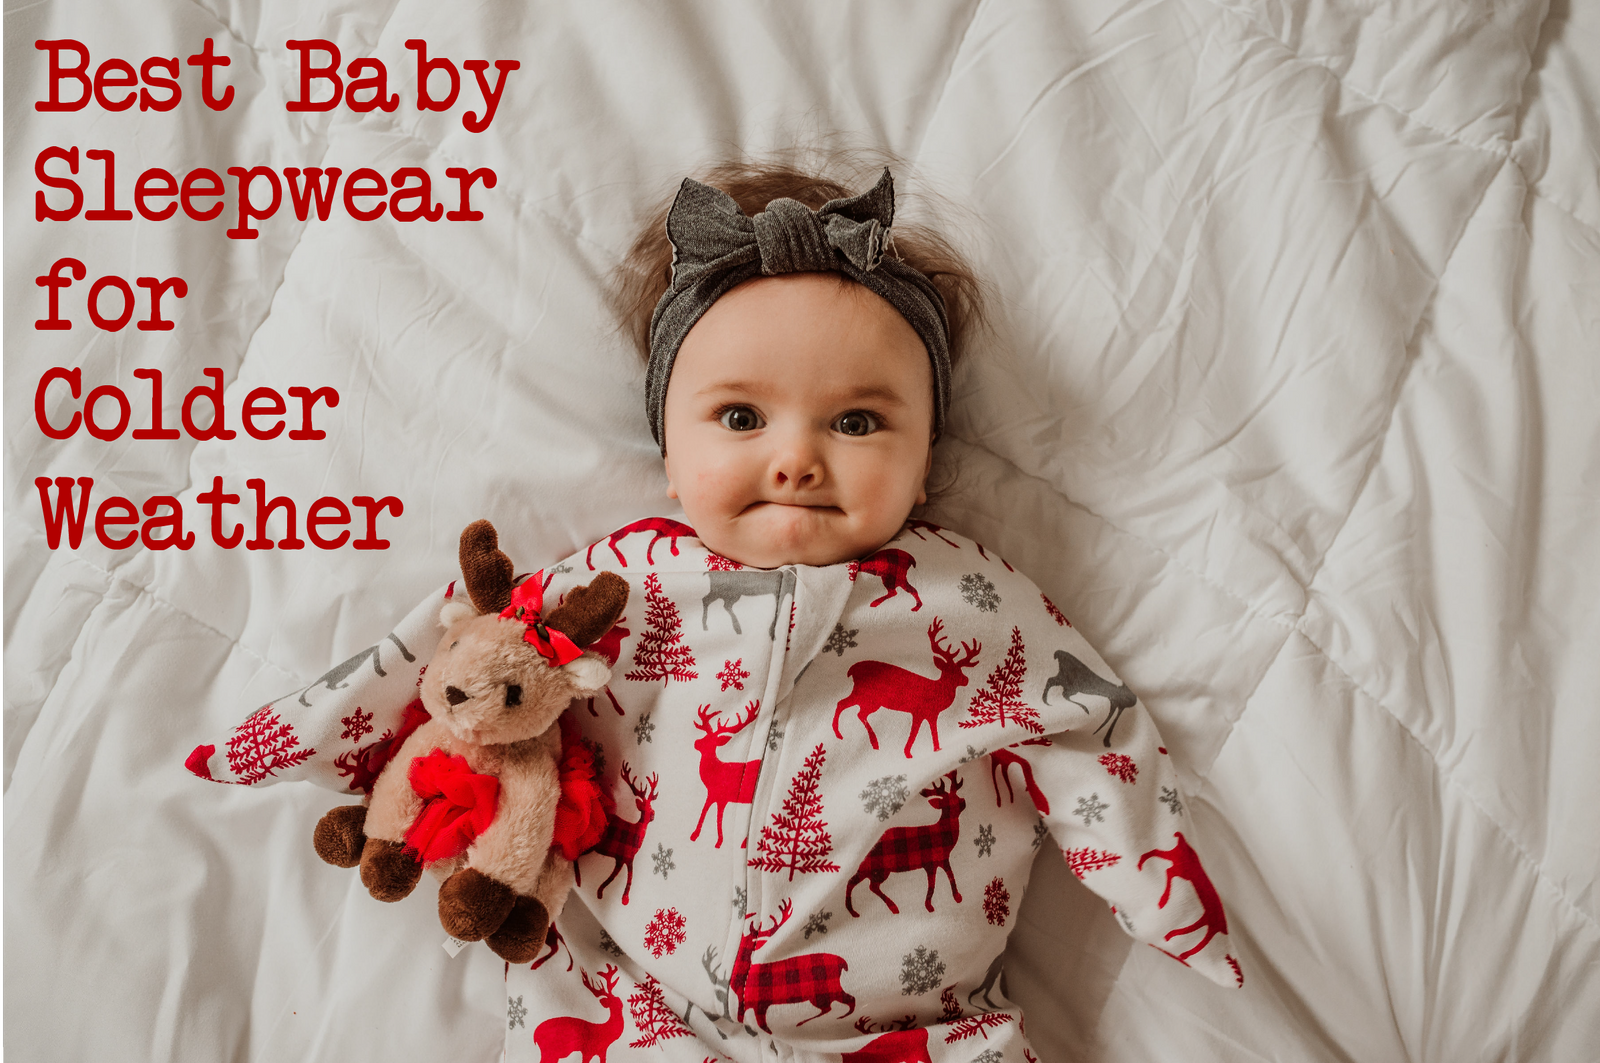 Best Baby Sleepwear for Colder Weather